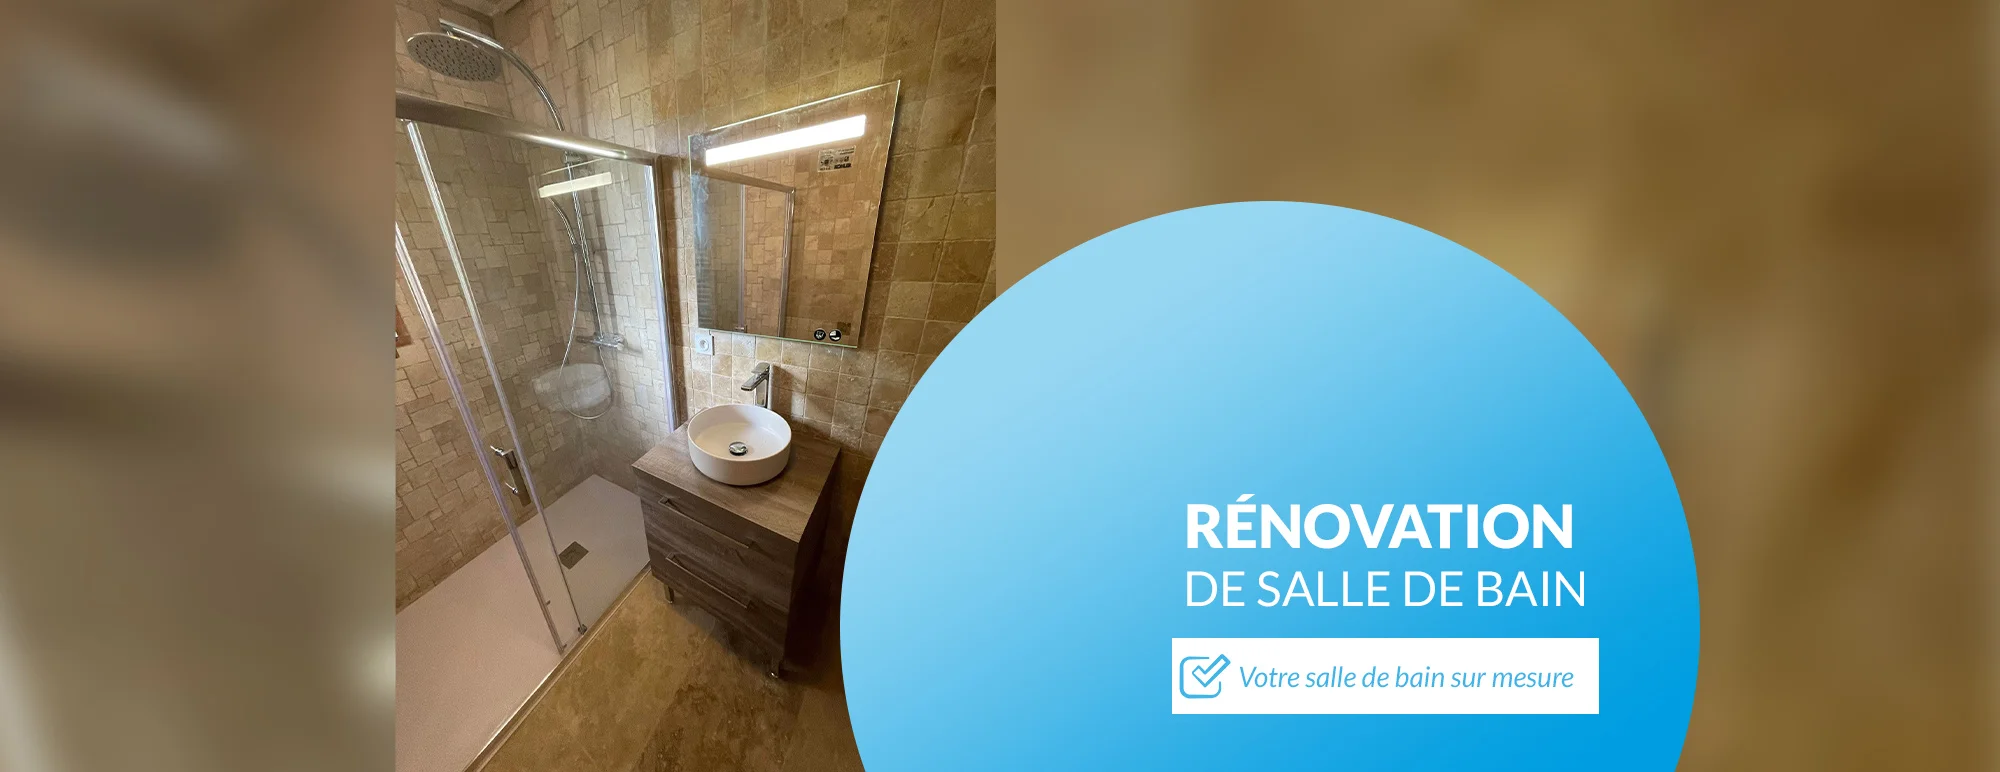 Rénovation de salle de bain sur mesure en Nord Gironde